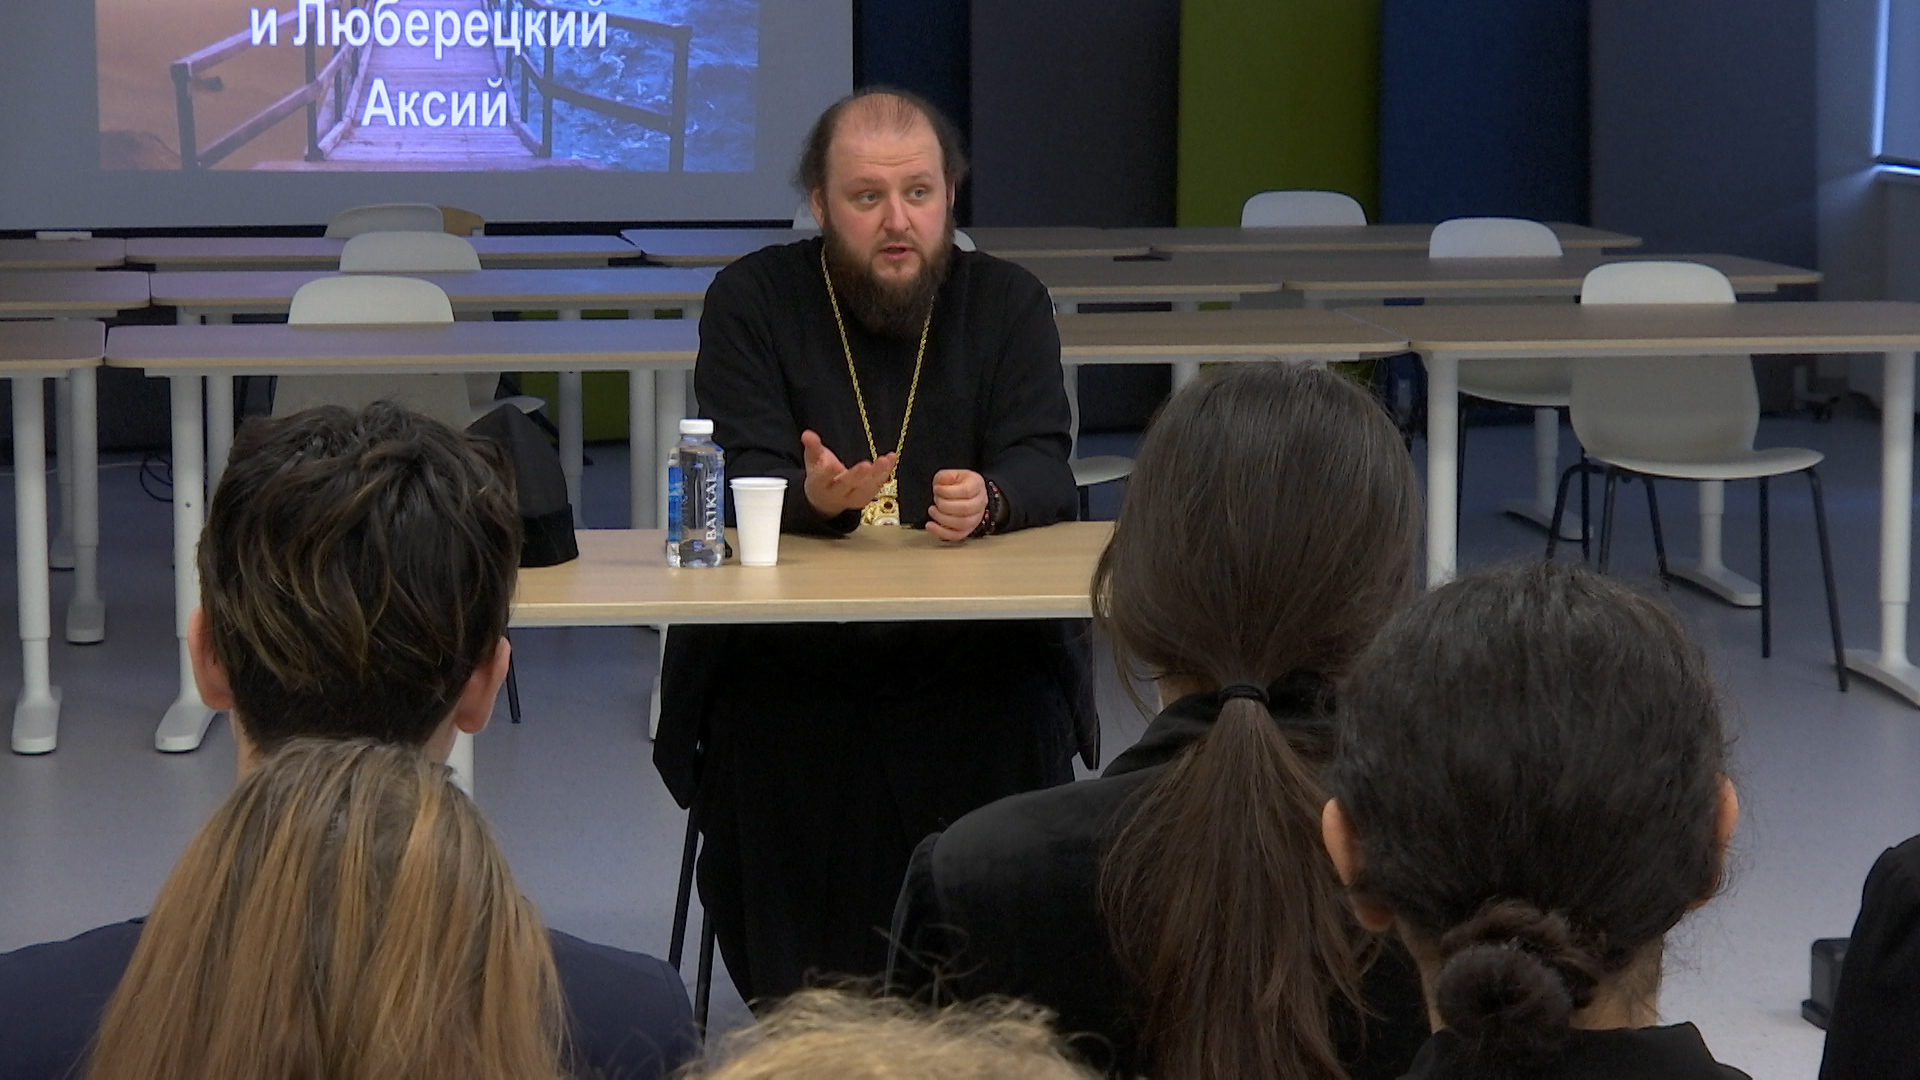 Архиепископ Подольский и Люберецкий Аксий провел урок для детей